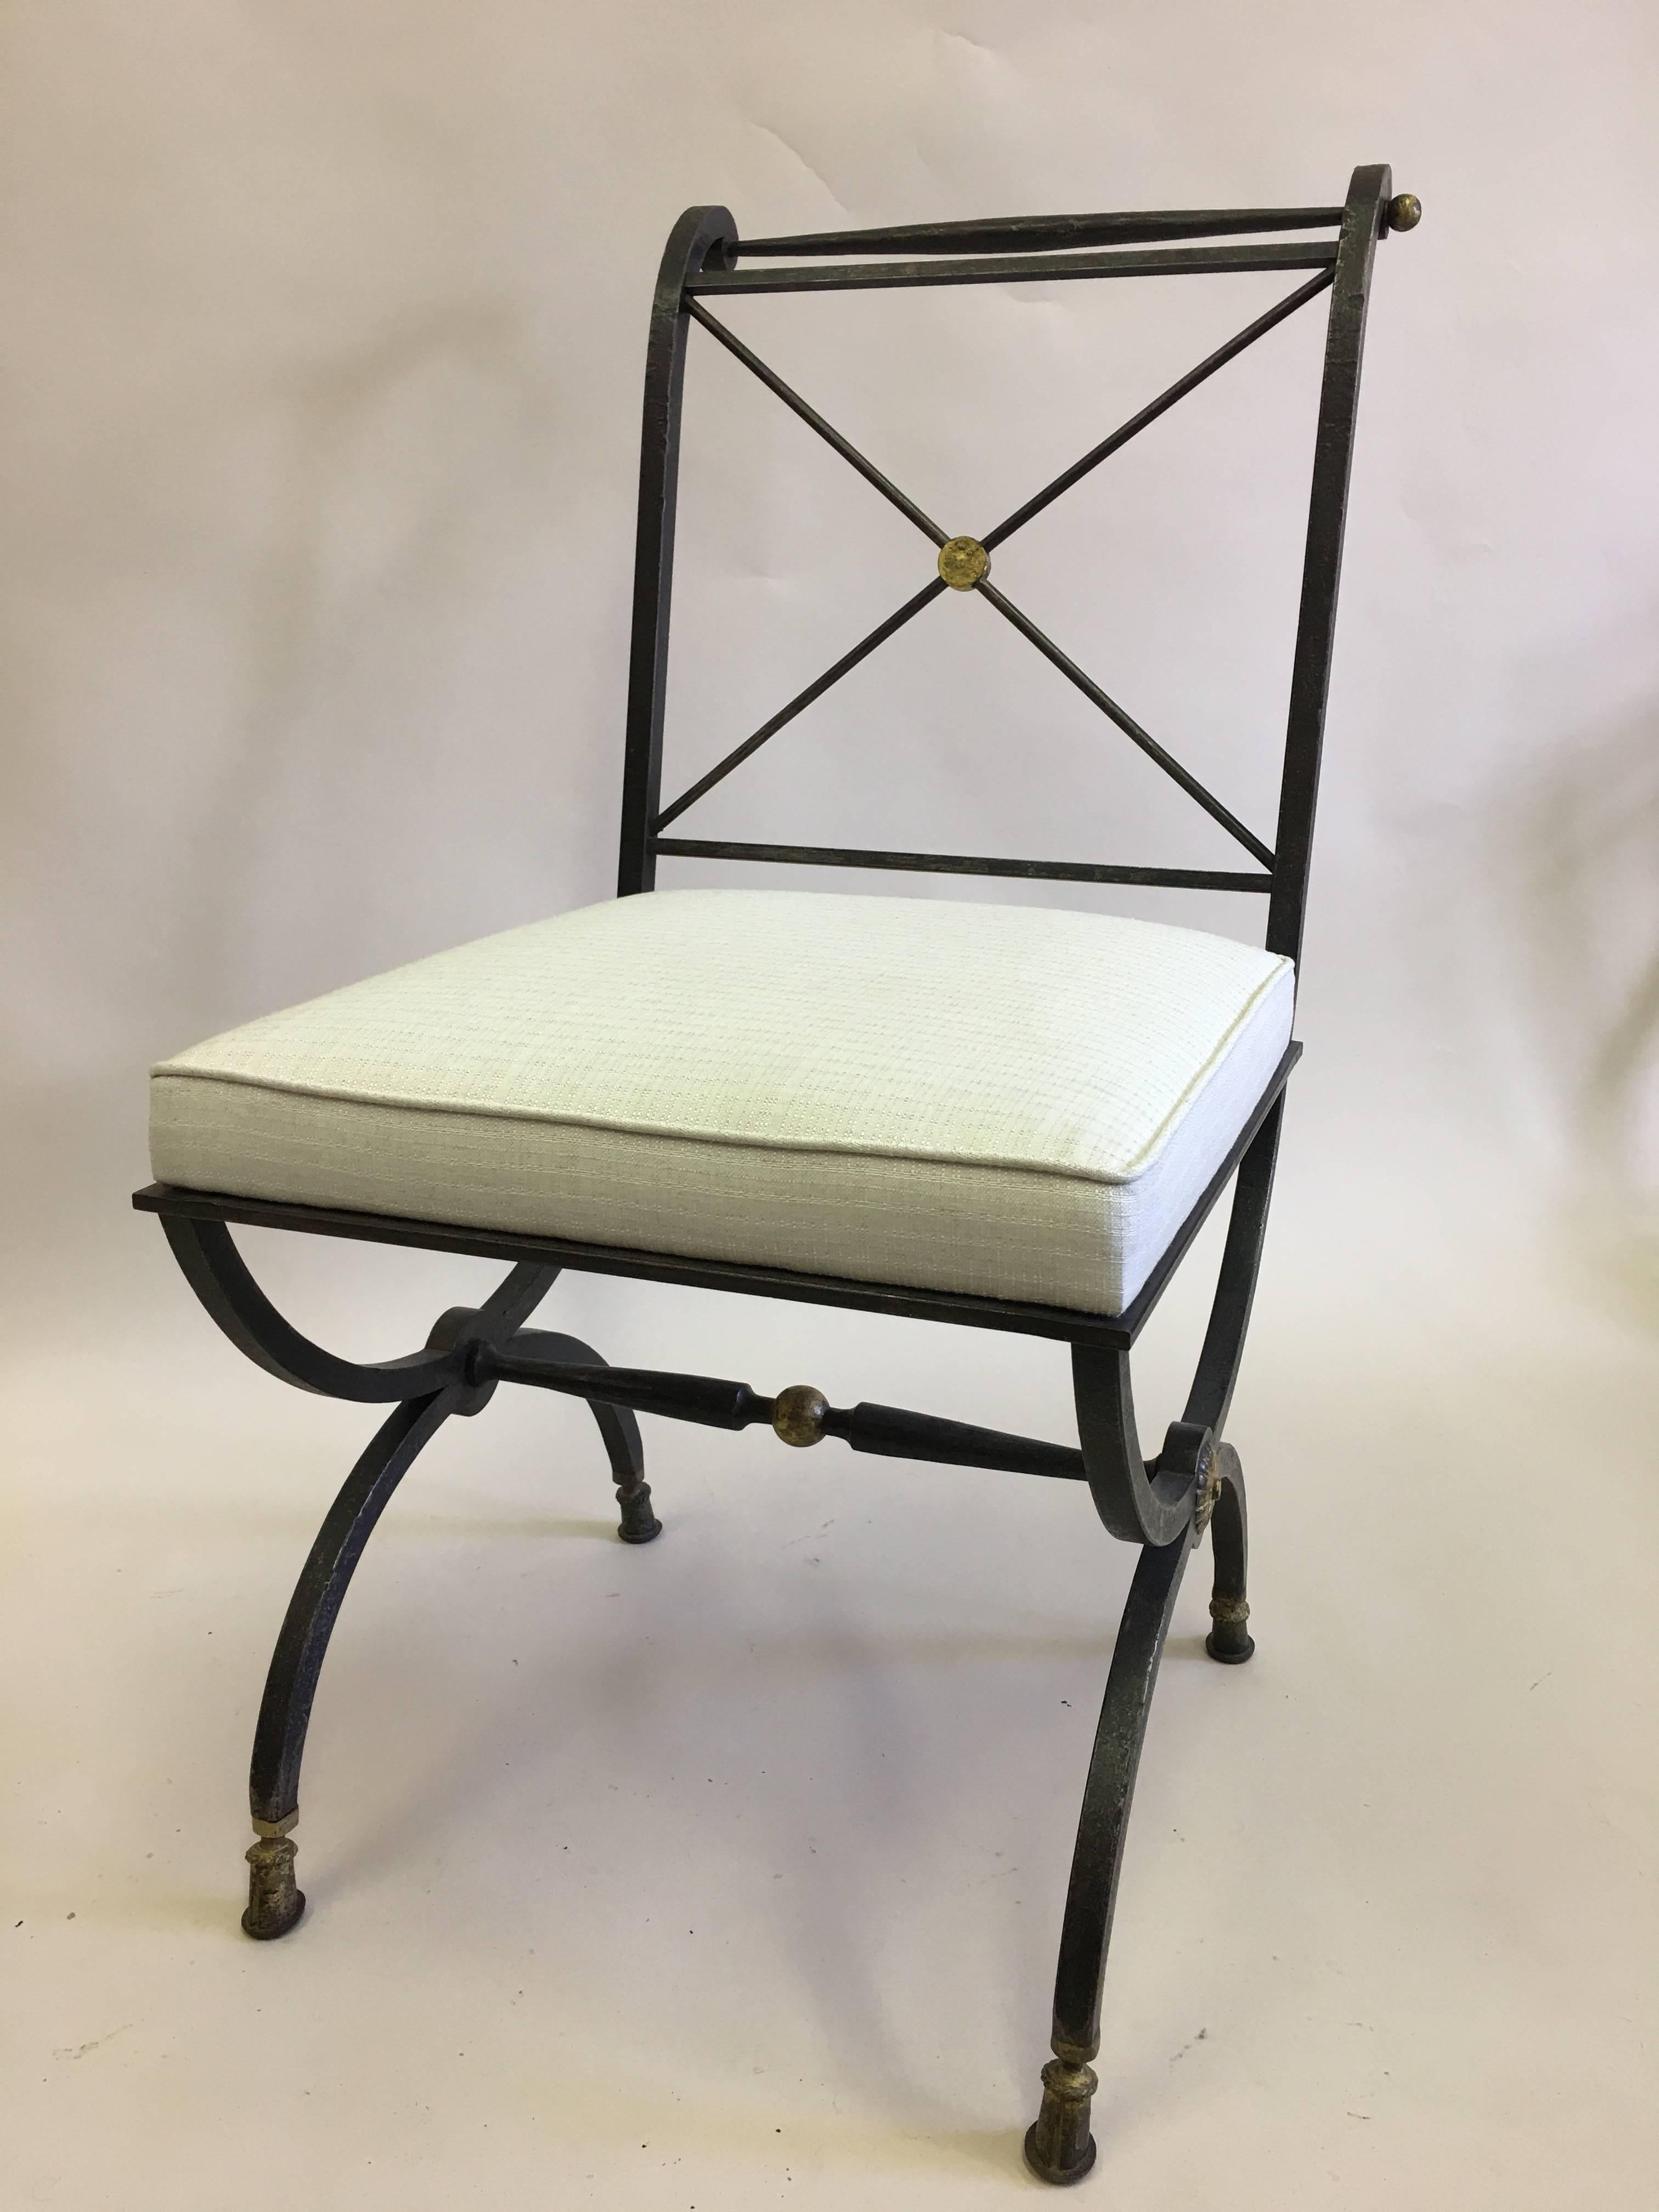 Elégante chaise en fer forgé martelé à la main, de forme néoclassique, pour bureau, coiffeuse ou salon, par Gilbert Poillerat, vers 1940, dont la structure de l'assise provient d'un design d'Andre Arbus.

La chaise est dotée d'une structure de